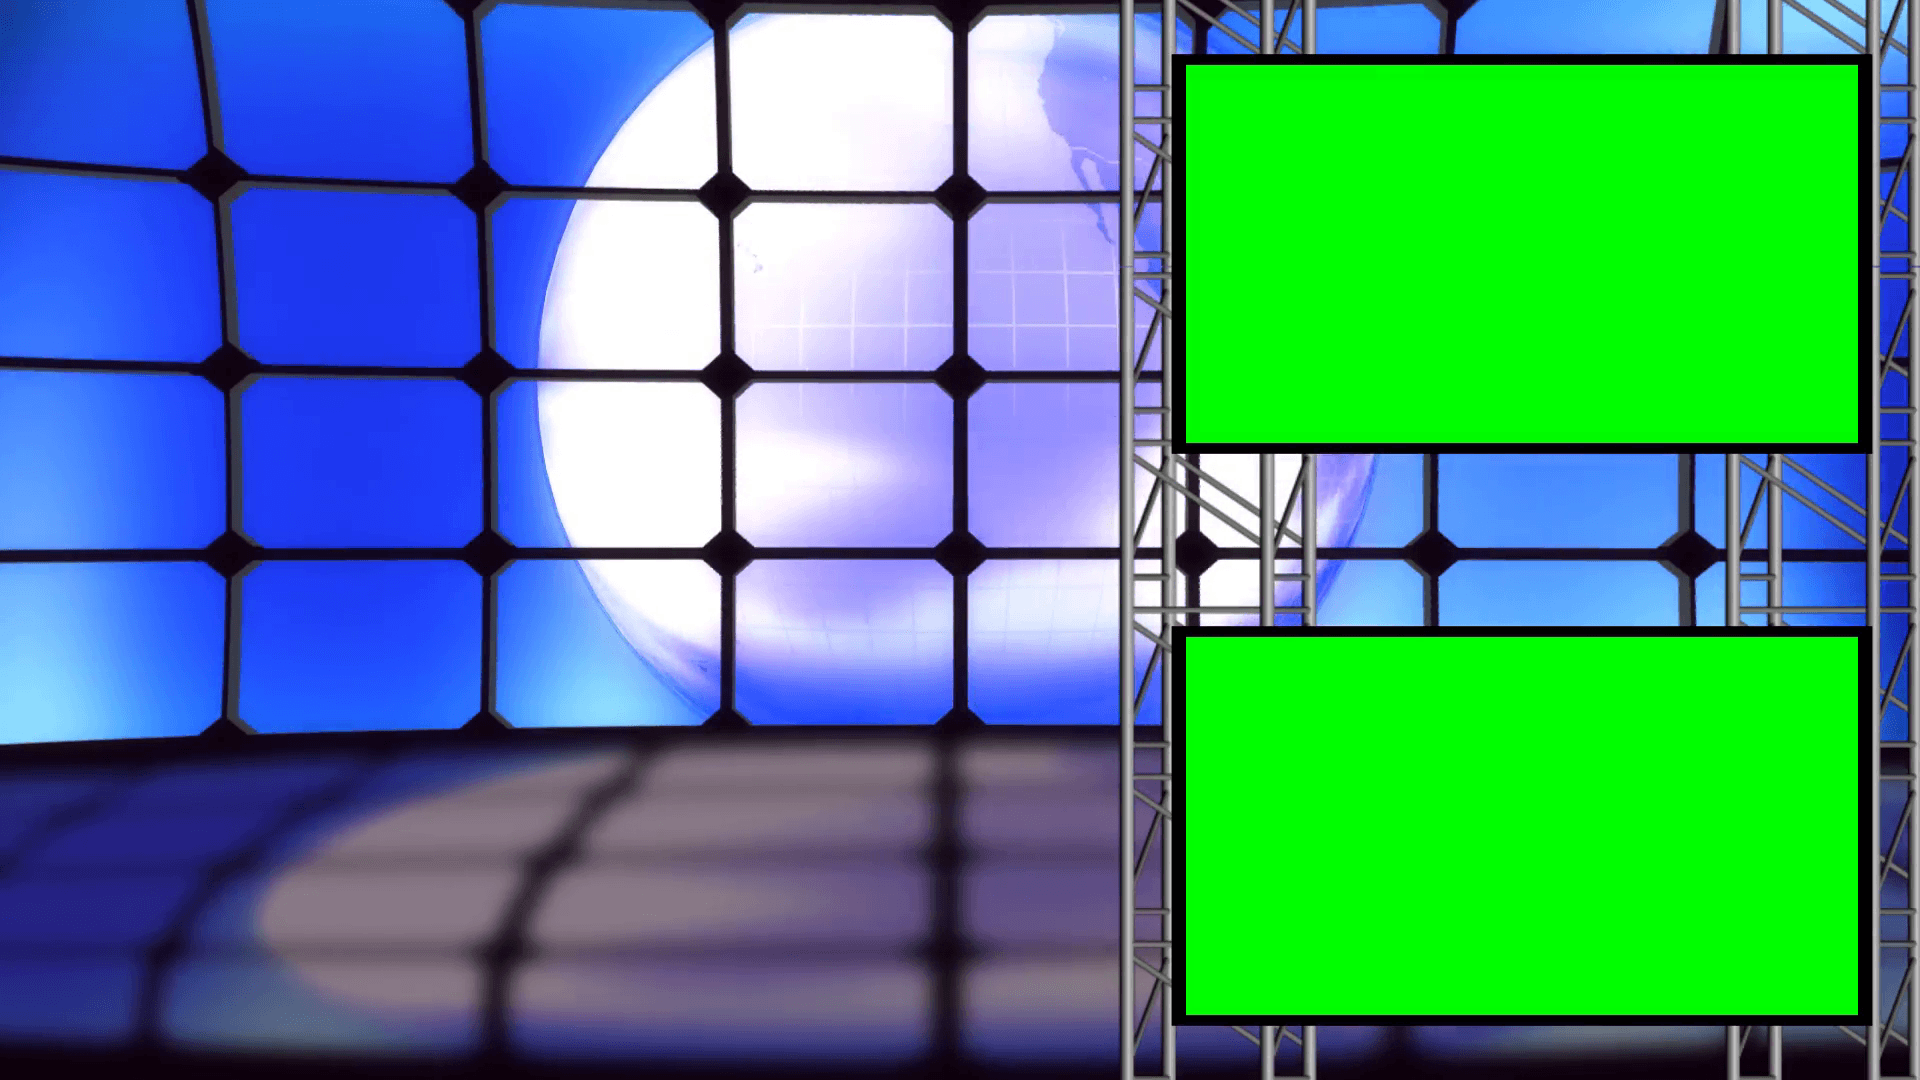 Green screen background images newsroom - brocontact